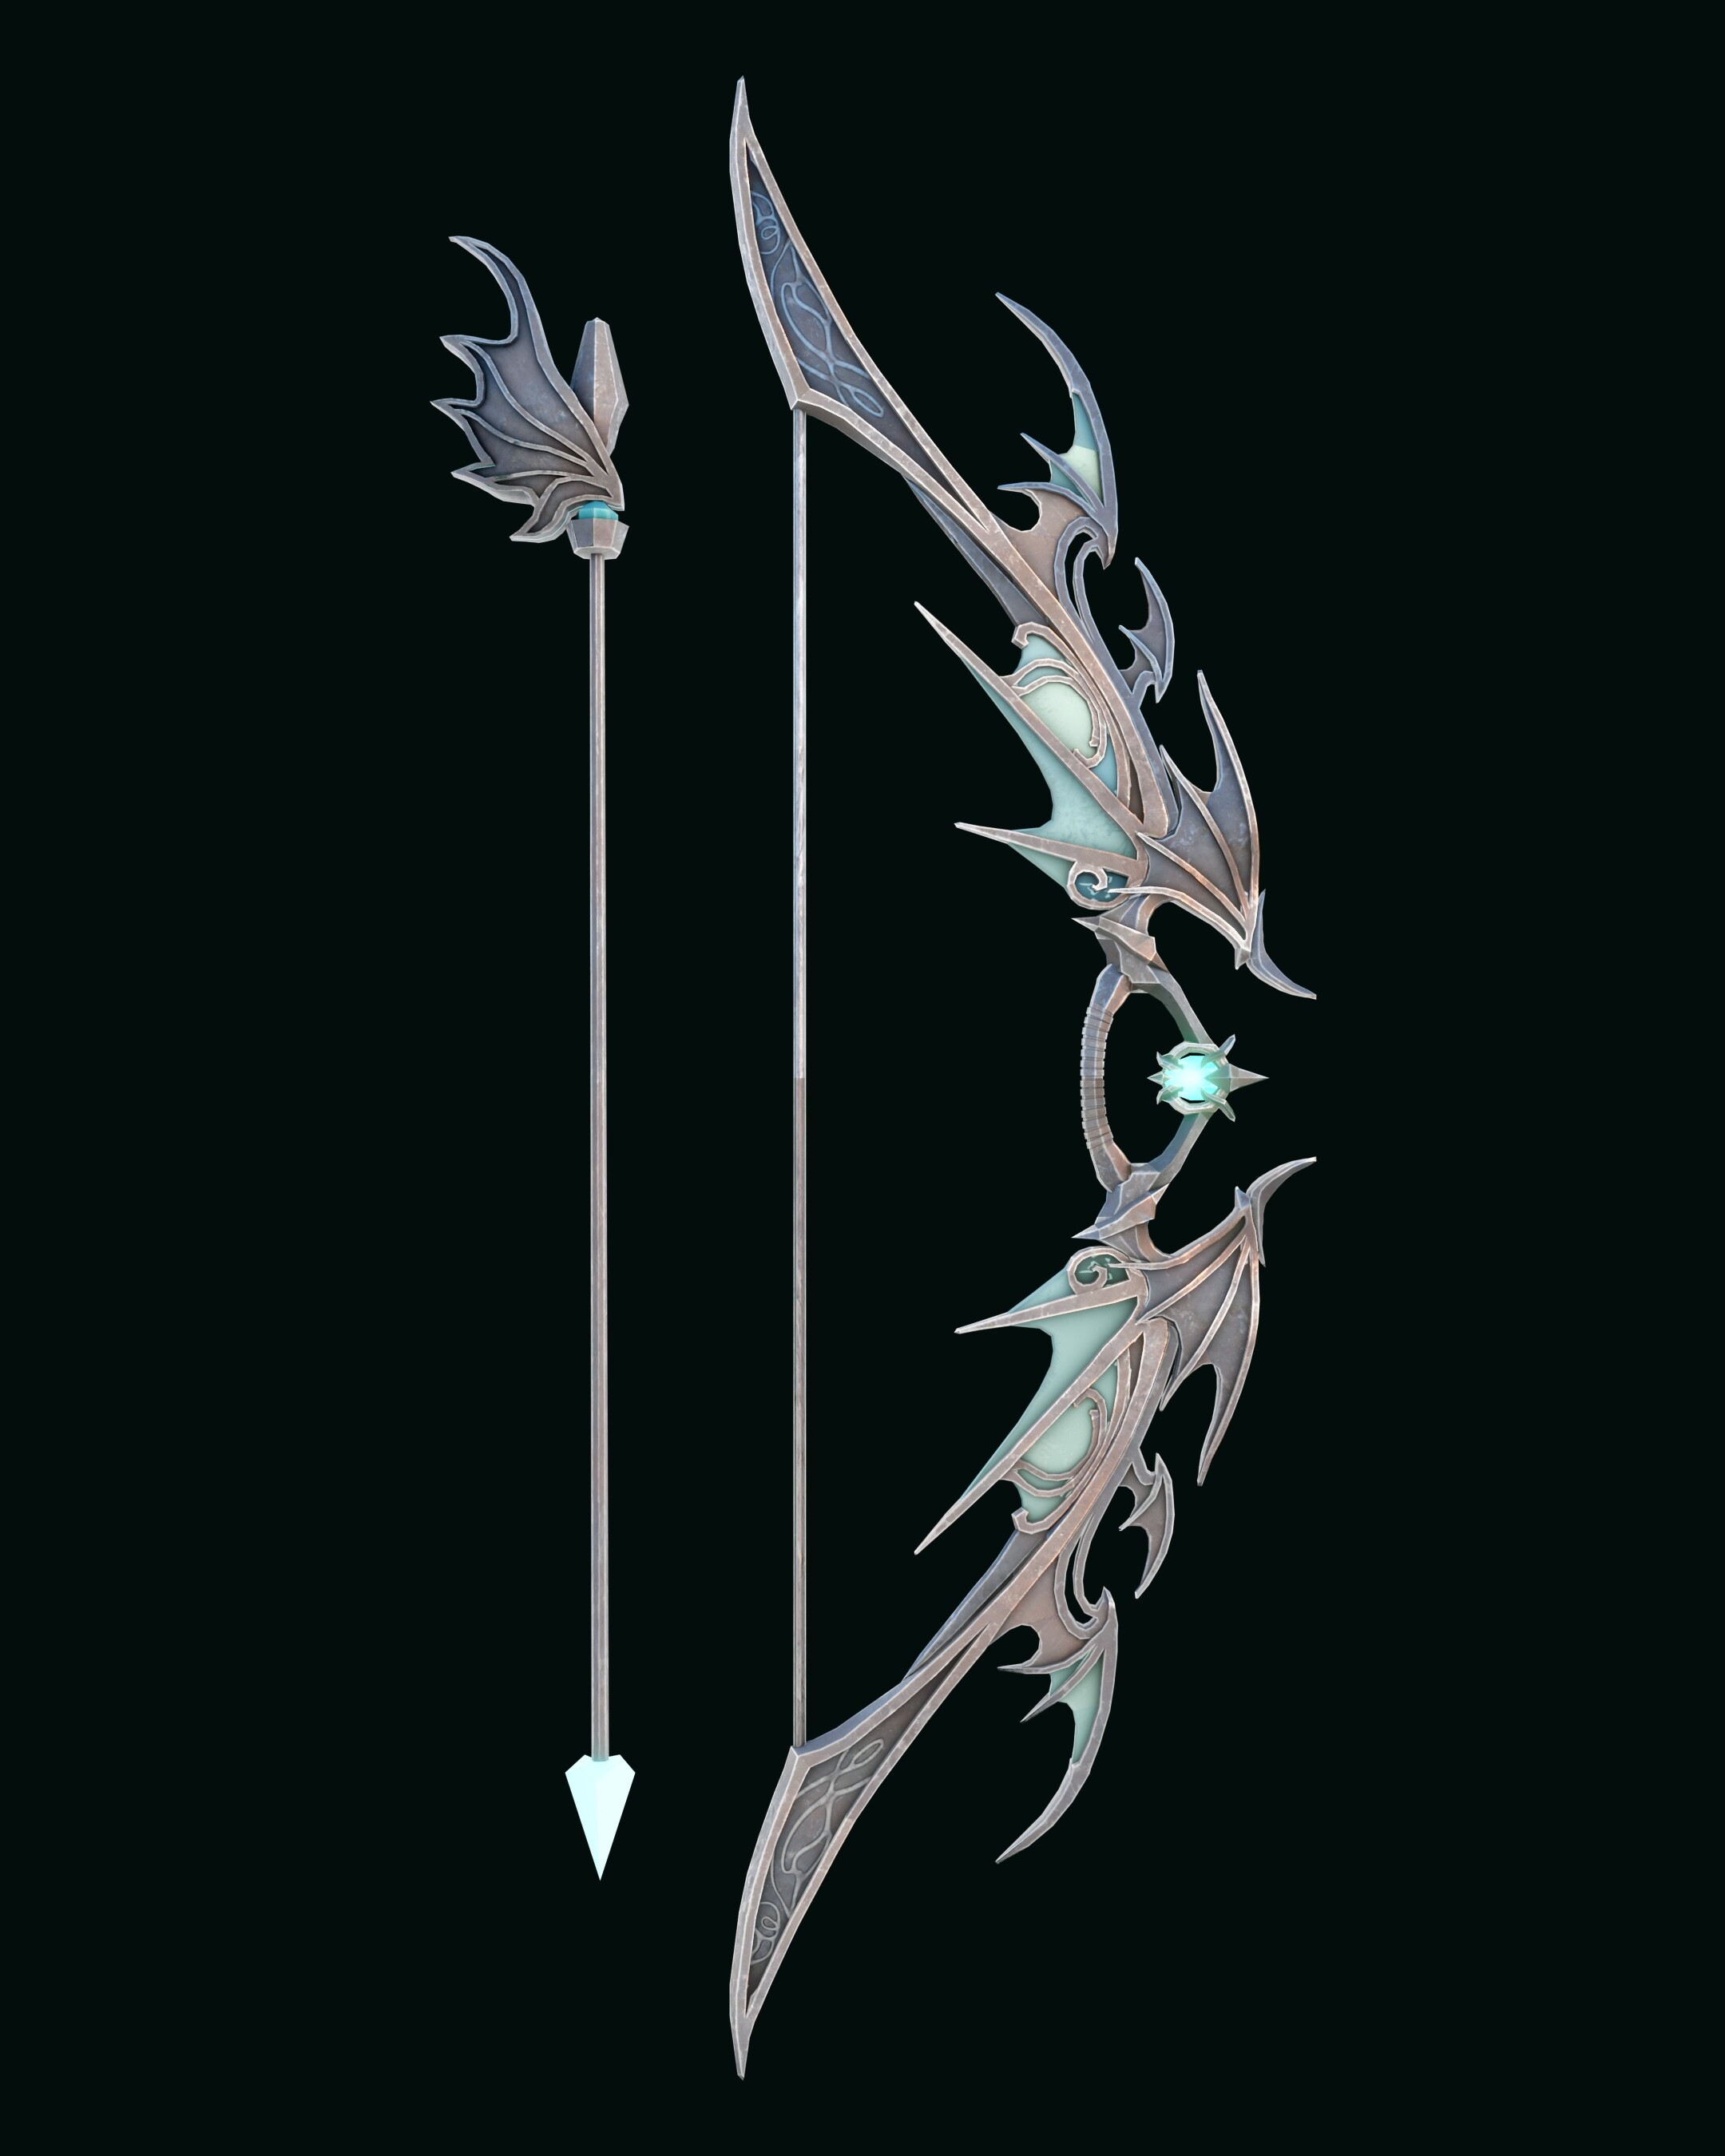 anime bow and arrow designs